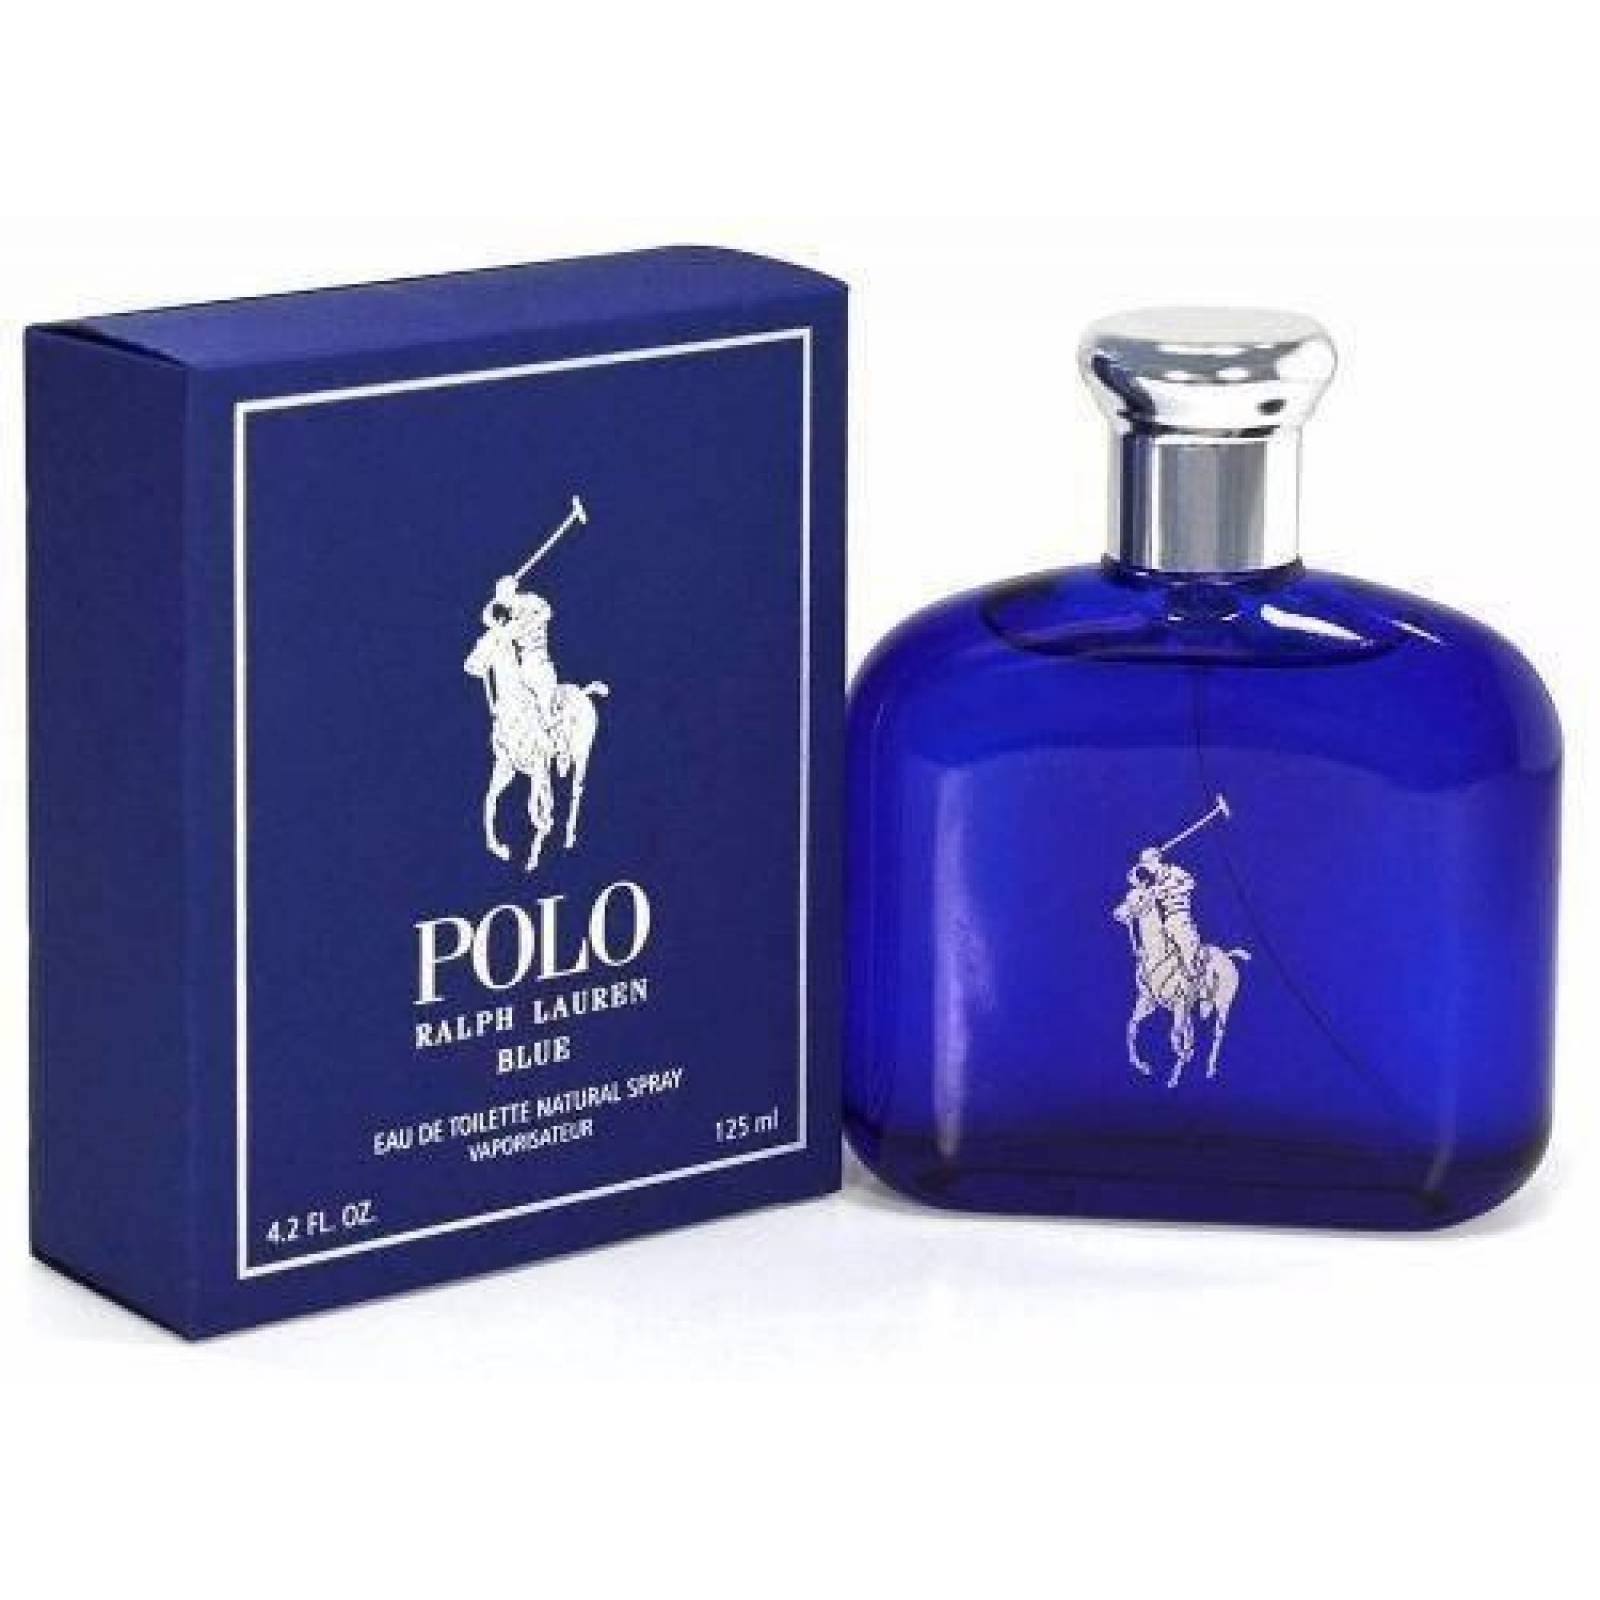 polo blue original